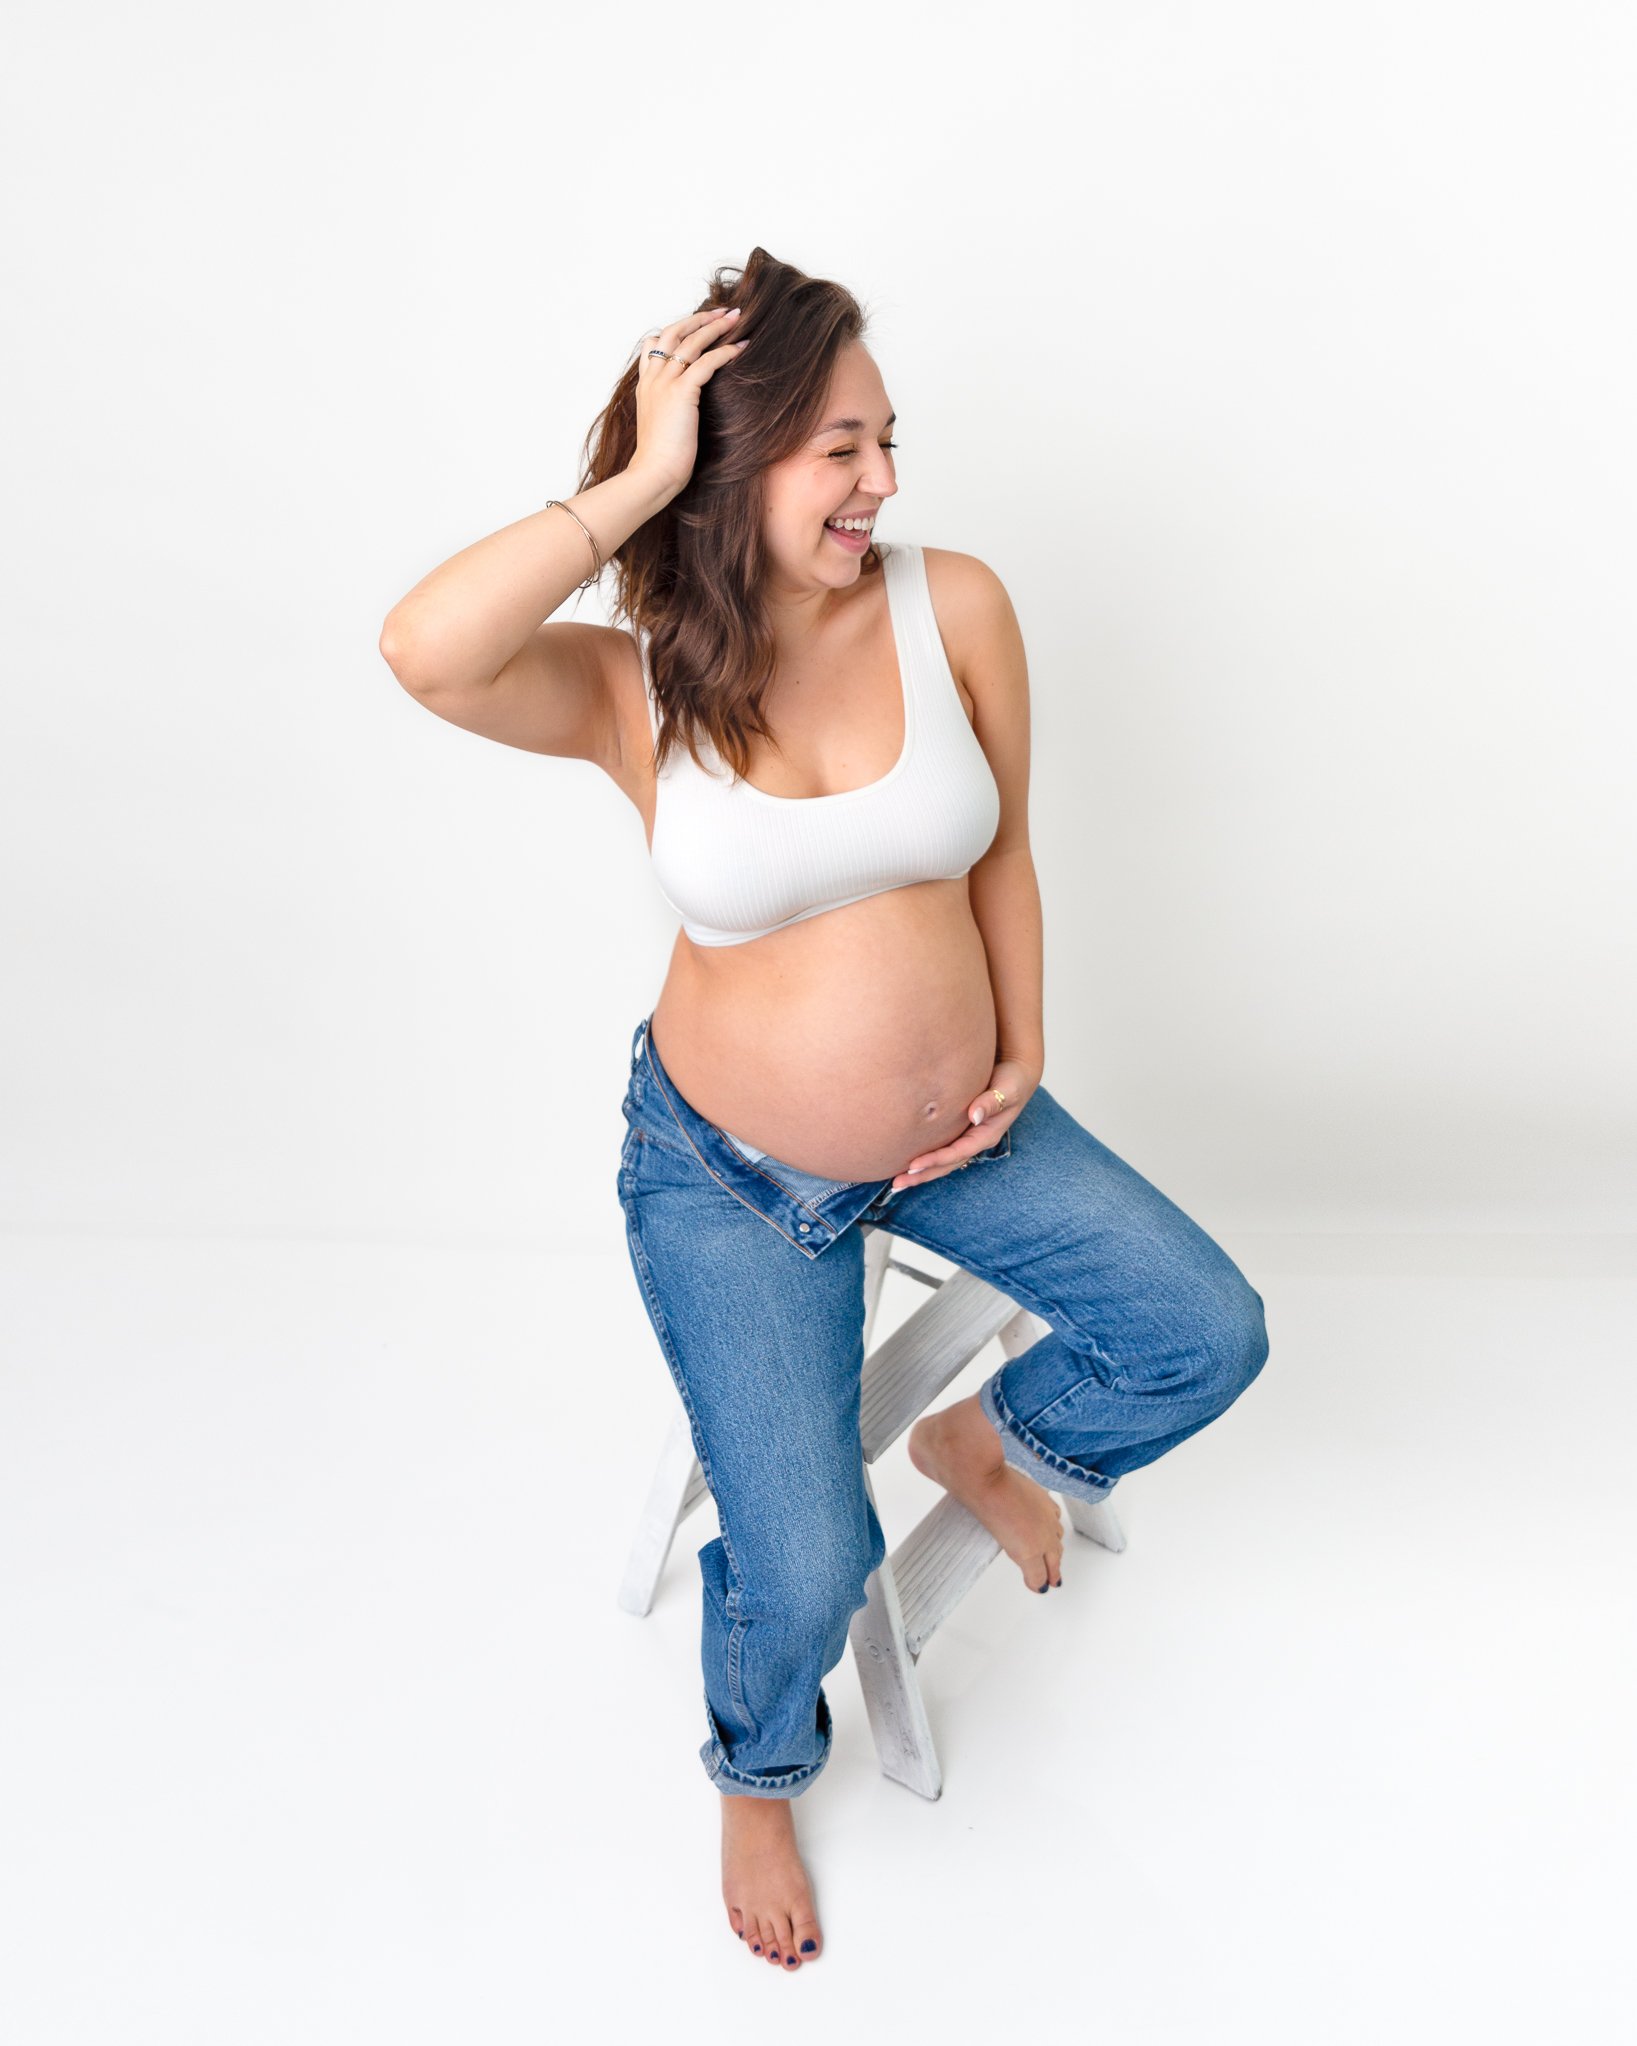 newborn-photos-infant-photography-Maternity-images-baby-bump-expecting-spokane-washington-7.jpg